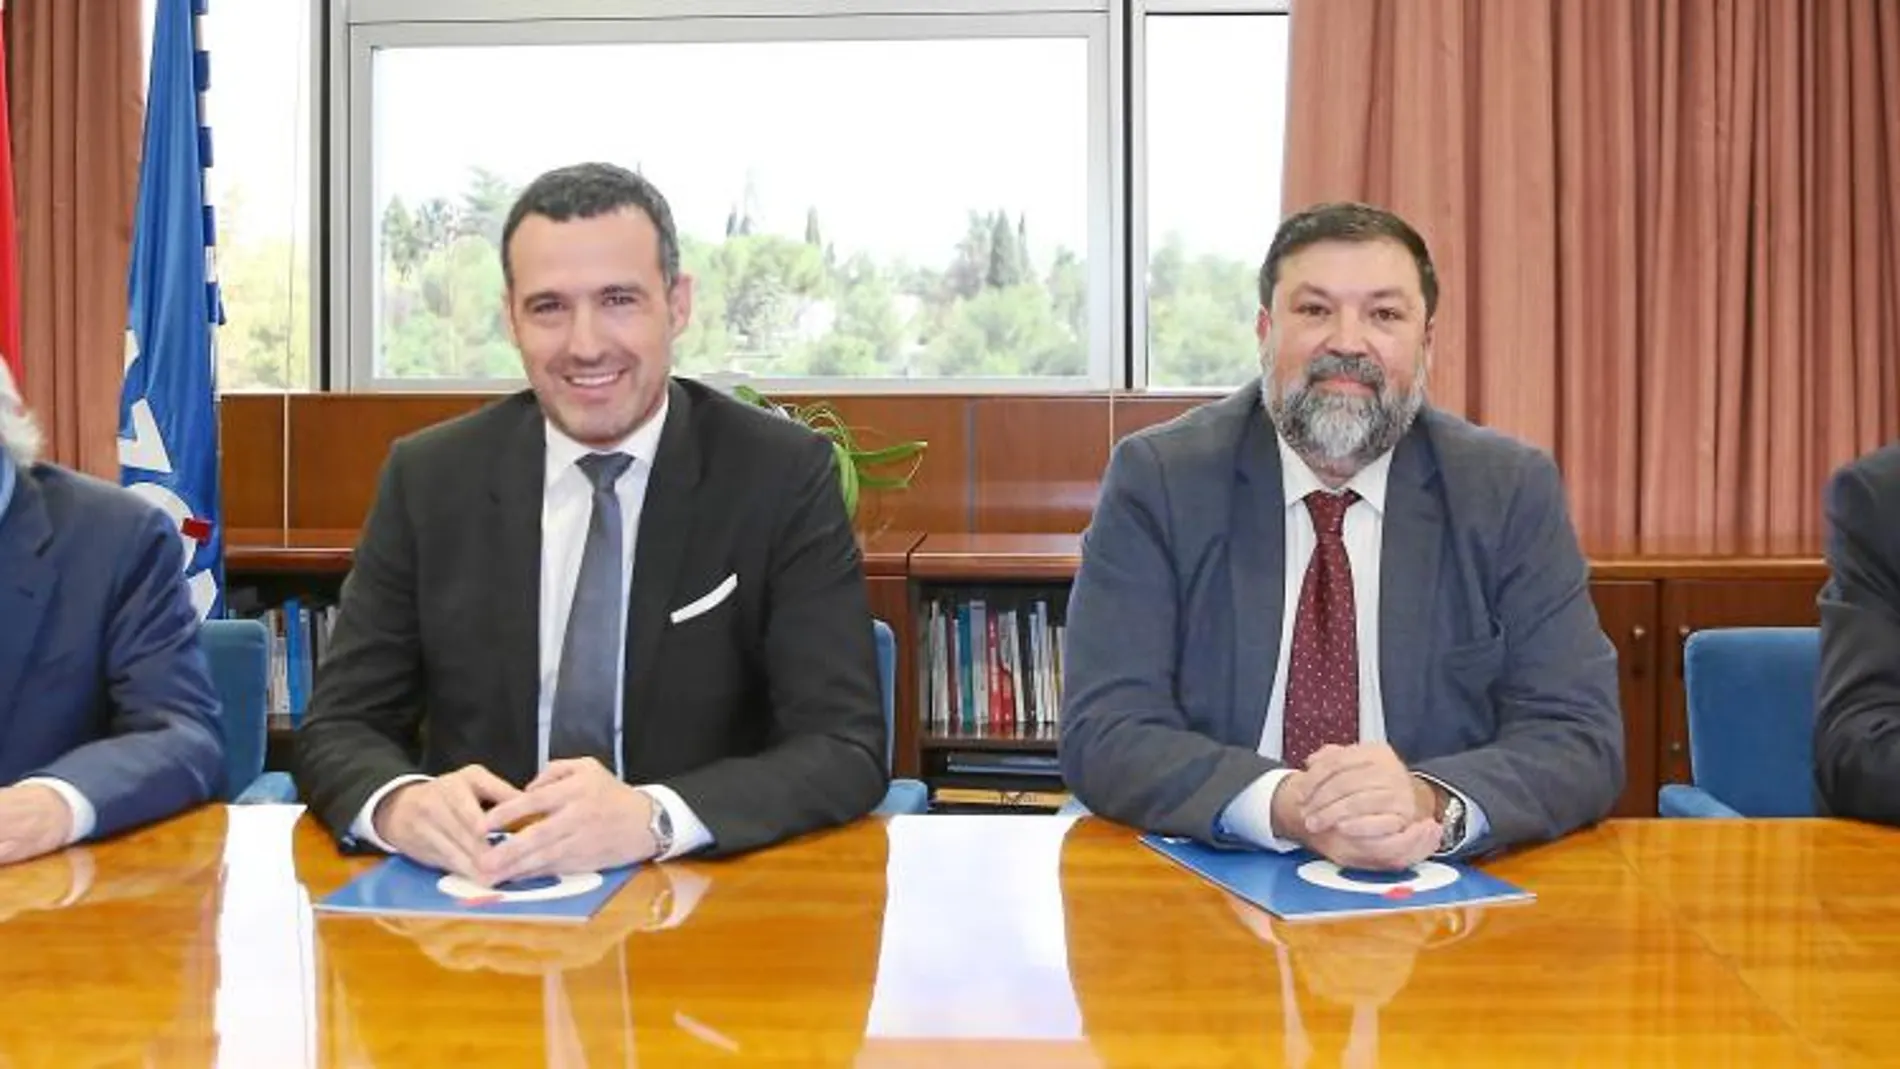 De izquierda a derecha: R. Aurín (consultor en Gobernanza del Agua), R. Cots (secretario general del Ayuntamiento de Gavá), F. Caamaño (ex ministro de Justicia) y V. Gómez (ex ministro de Trabajo e Inmigración)